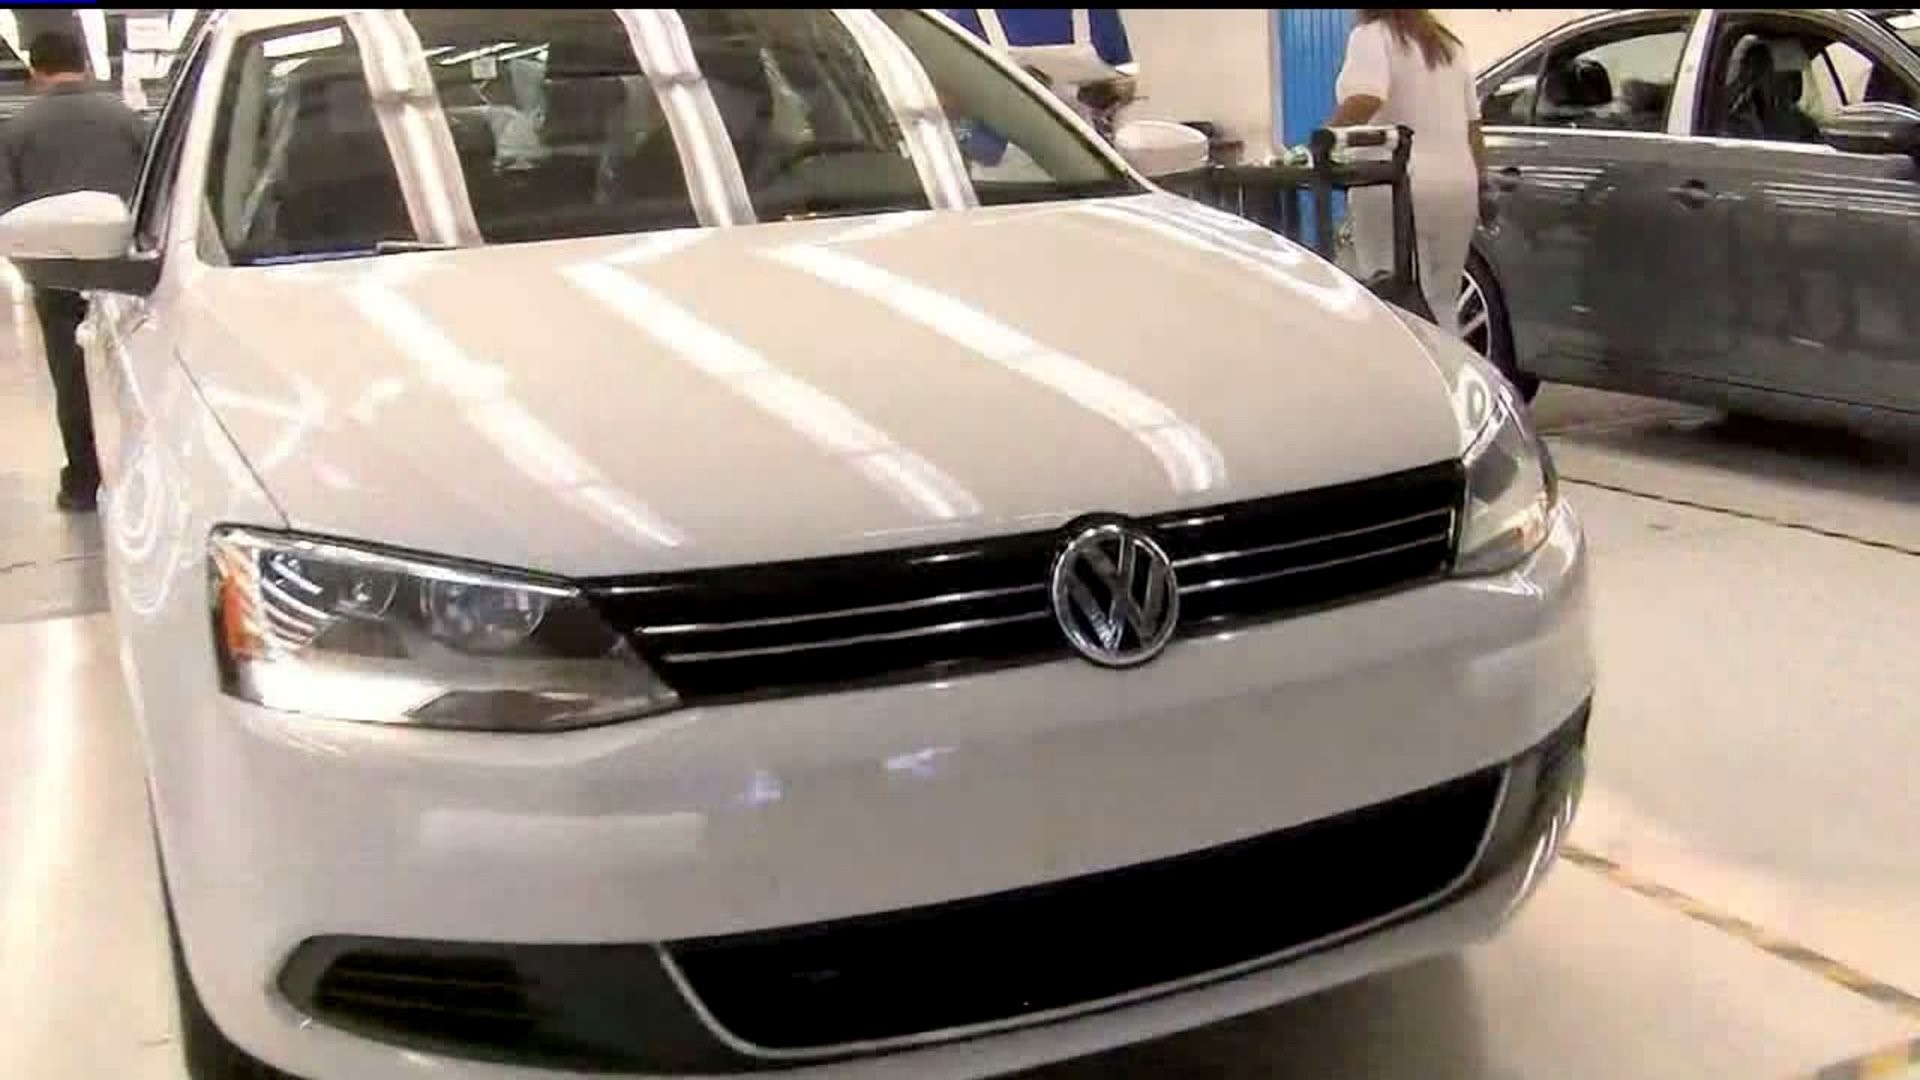 Volkswagen recall issued